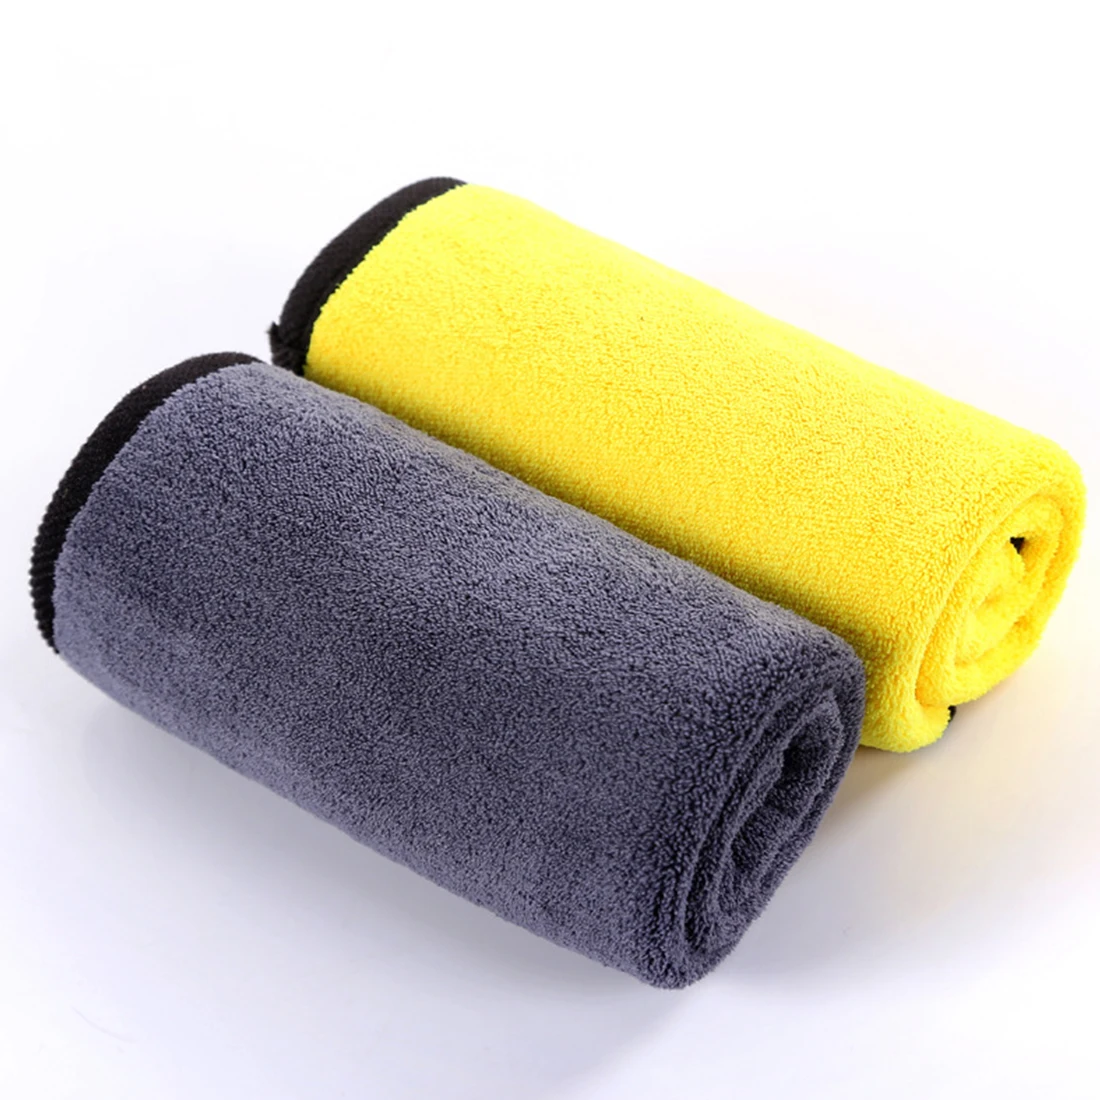 Dewtreetali новая сушильная ткань для чистки автомобиля уход за кромкой ткань для автомойки полотенце для автомойки с микрофиброй полотенце 30*30 см